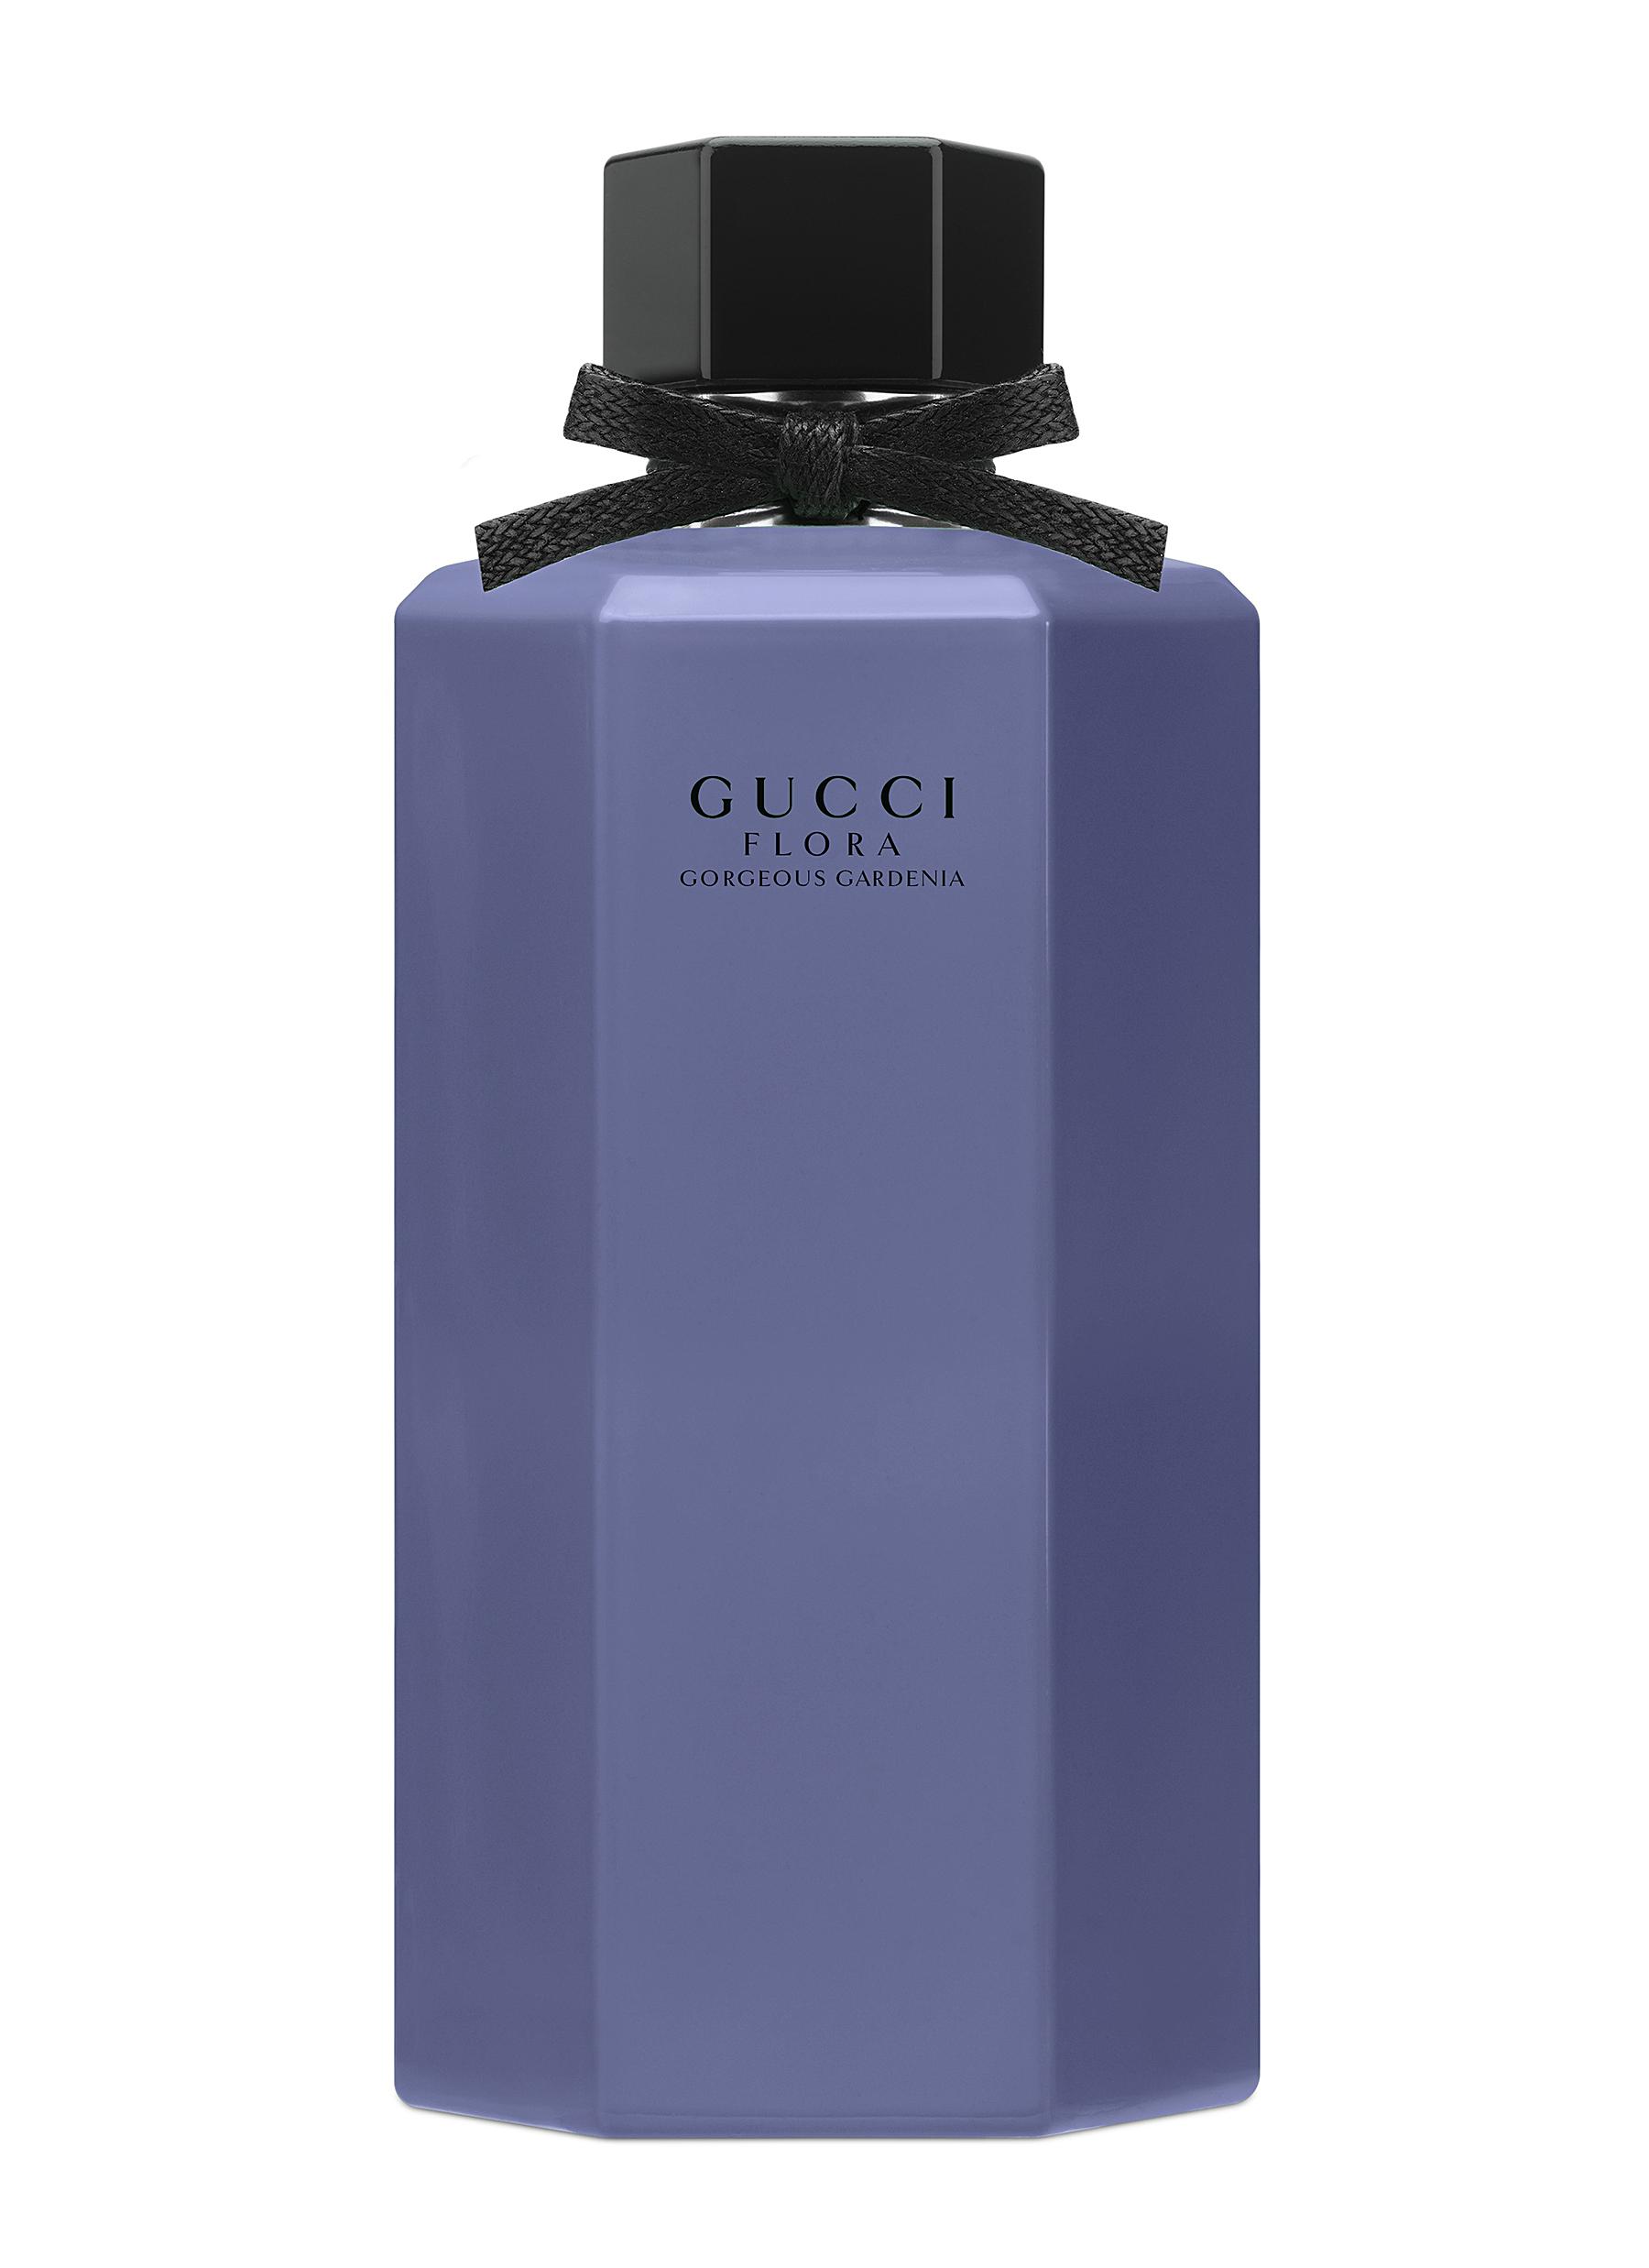 lærken argument Rafflesia Arnoldi GUCCI | Limited Edition Gucci Flora Gorgeous Gardenia Eau de Toilette 100ml  | Beauty | Lane Crawford